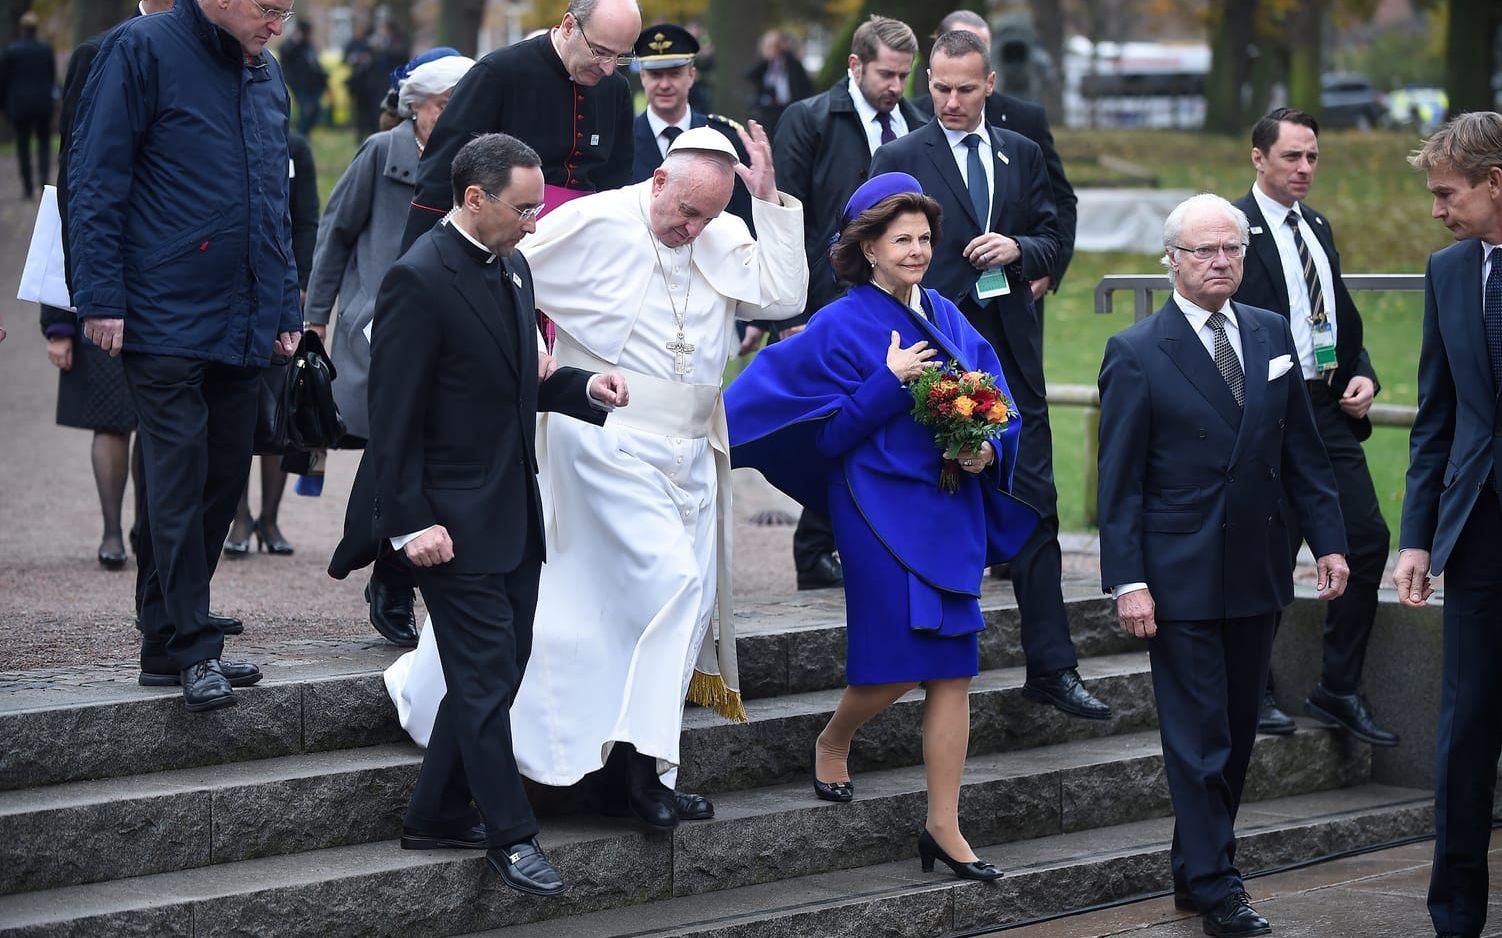 31 oktober: Håll i hatten! Påve Franciskus är på besök i Lund och ses här snubbla på väg till domkyrkan i sällskap av kungen och drottningen. Foto: TT